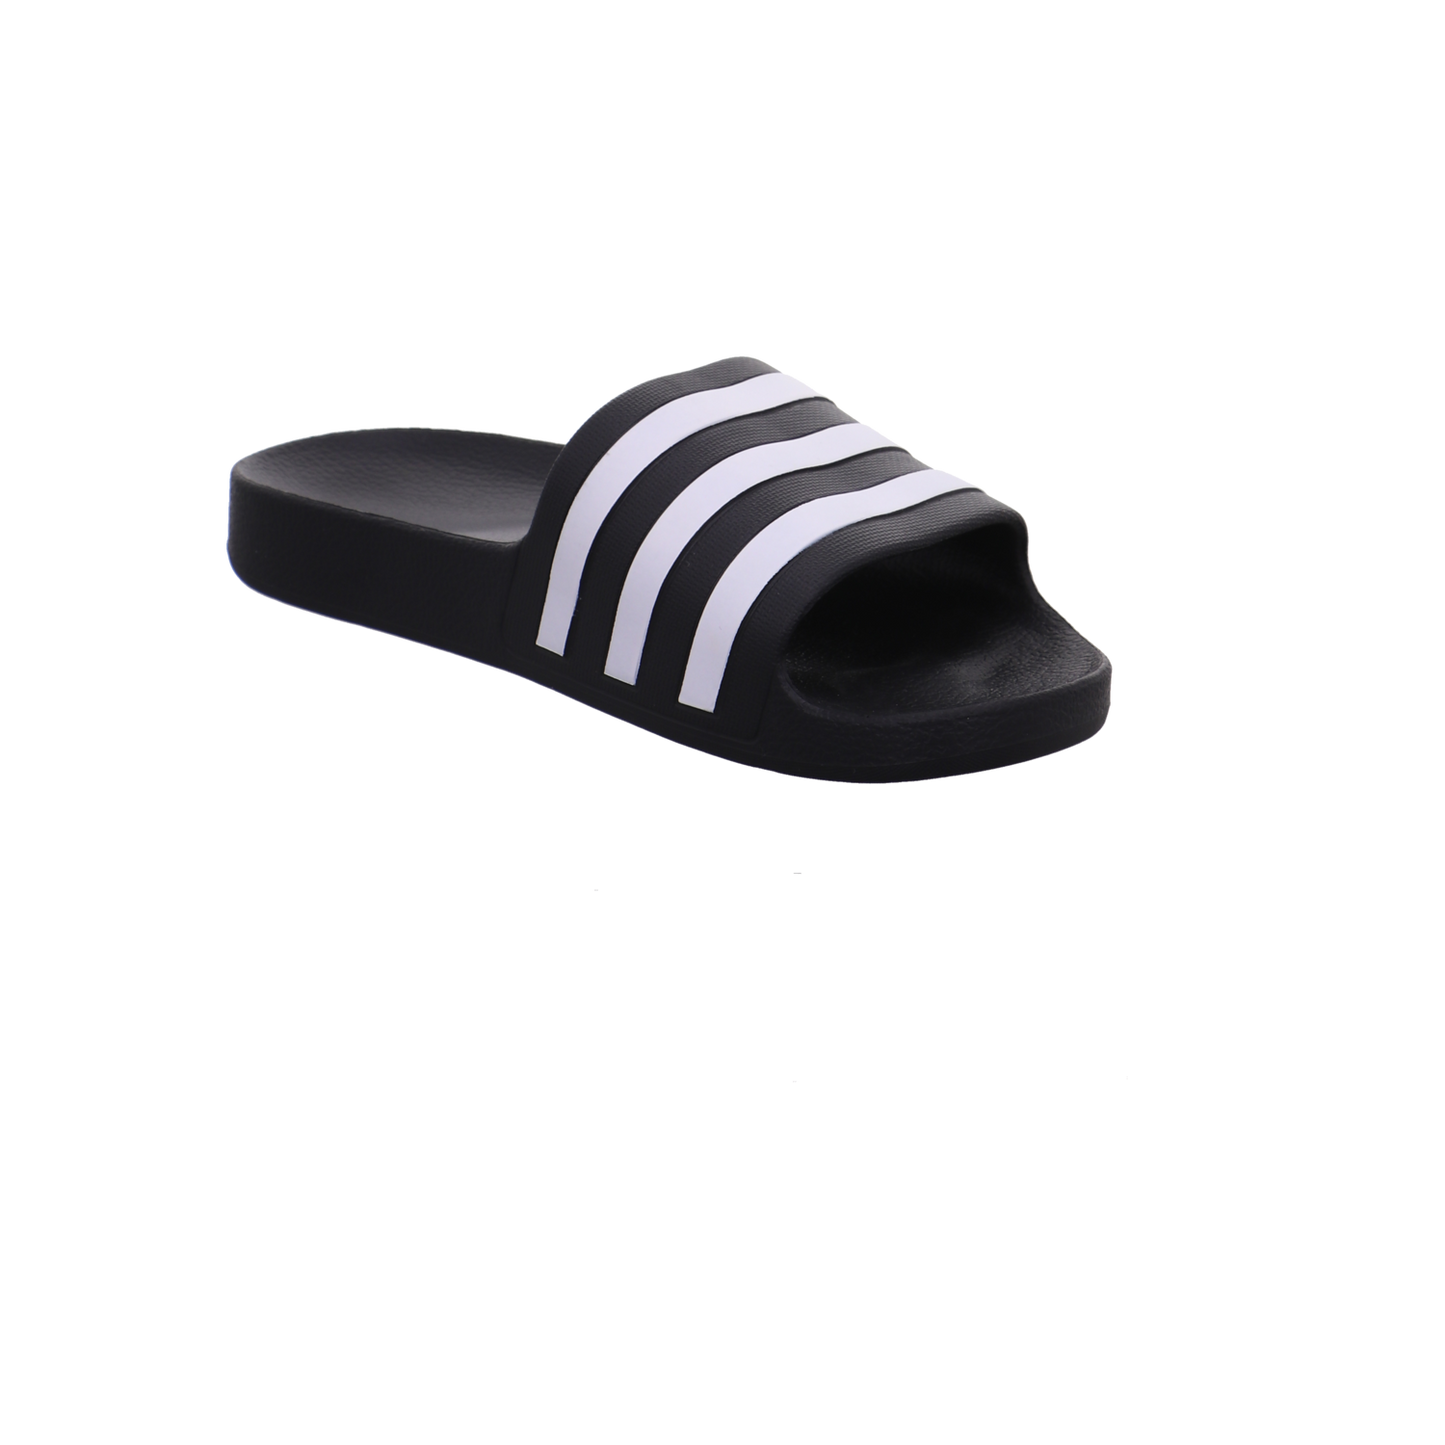 Adidas Schuhe  schwarz kombi Bild7